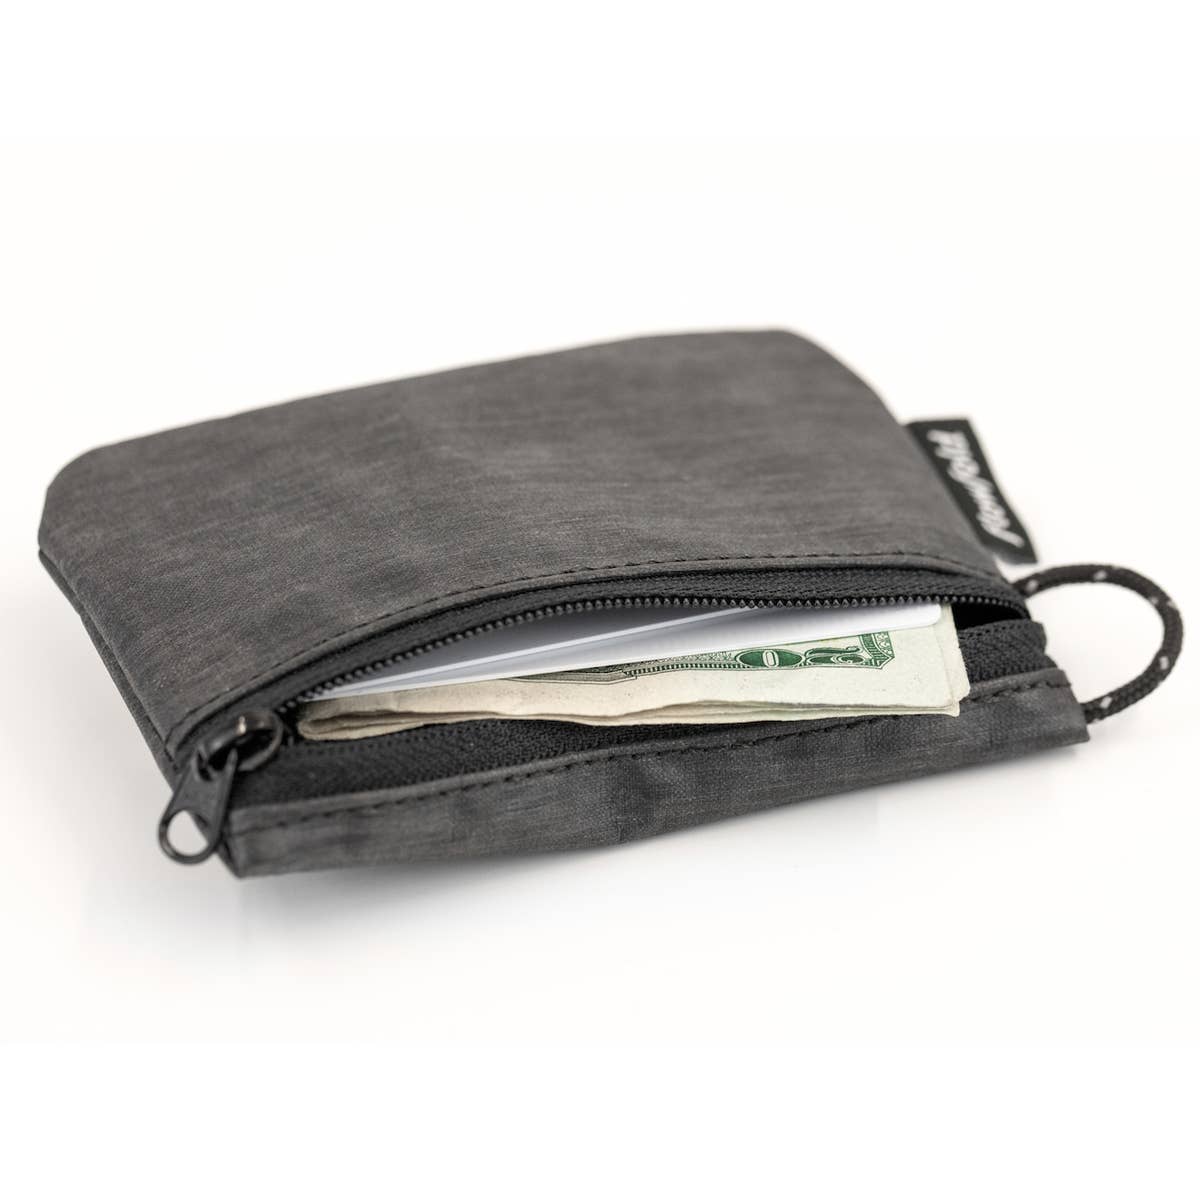 FlowFold | Essentialist Coin Pouch Zipper Wallet, Wallet, Flowfold, Defiance Outdoor Gear Co.